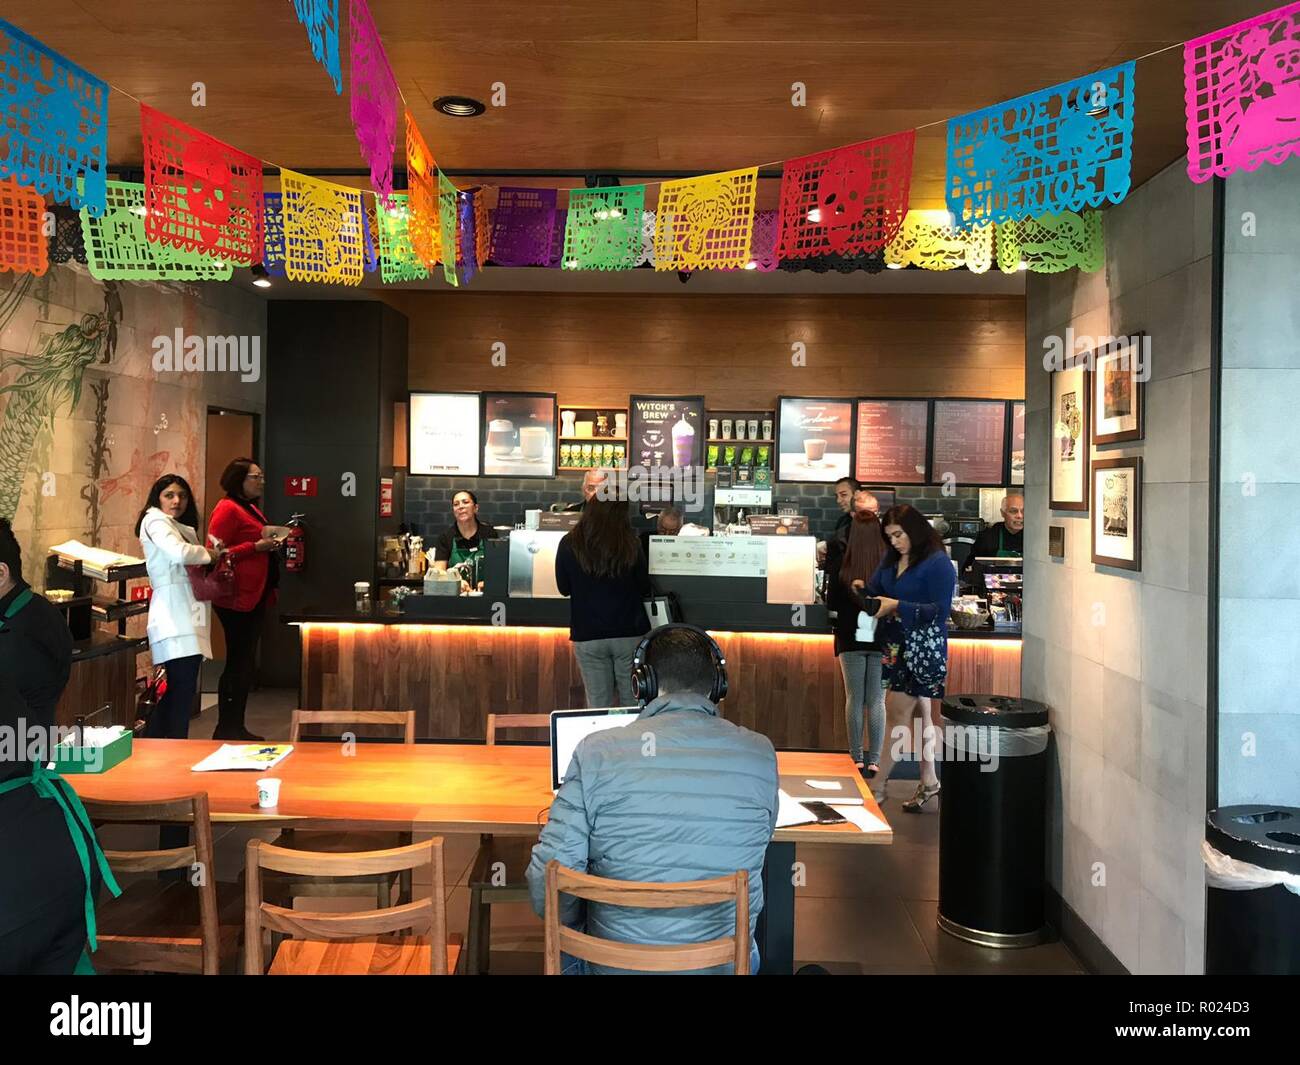 30 octobre 2018, le Mexique, l'Mexiko-Stadt : les employés travaillent en tant que barista dans une branche de l'US café chambre 'Starbucks'. Tous les employés de la cafétéria, qui a ouvert ses portes à Del Valle sur au début de septembre, ont plus de 60 ans. Photo : Antonia Märzhäuser/dpa Banque D'Images